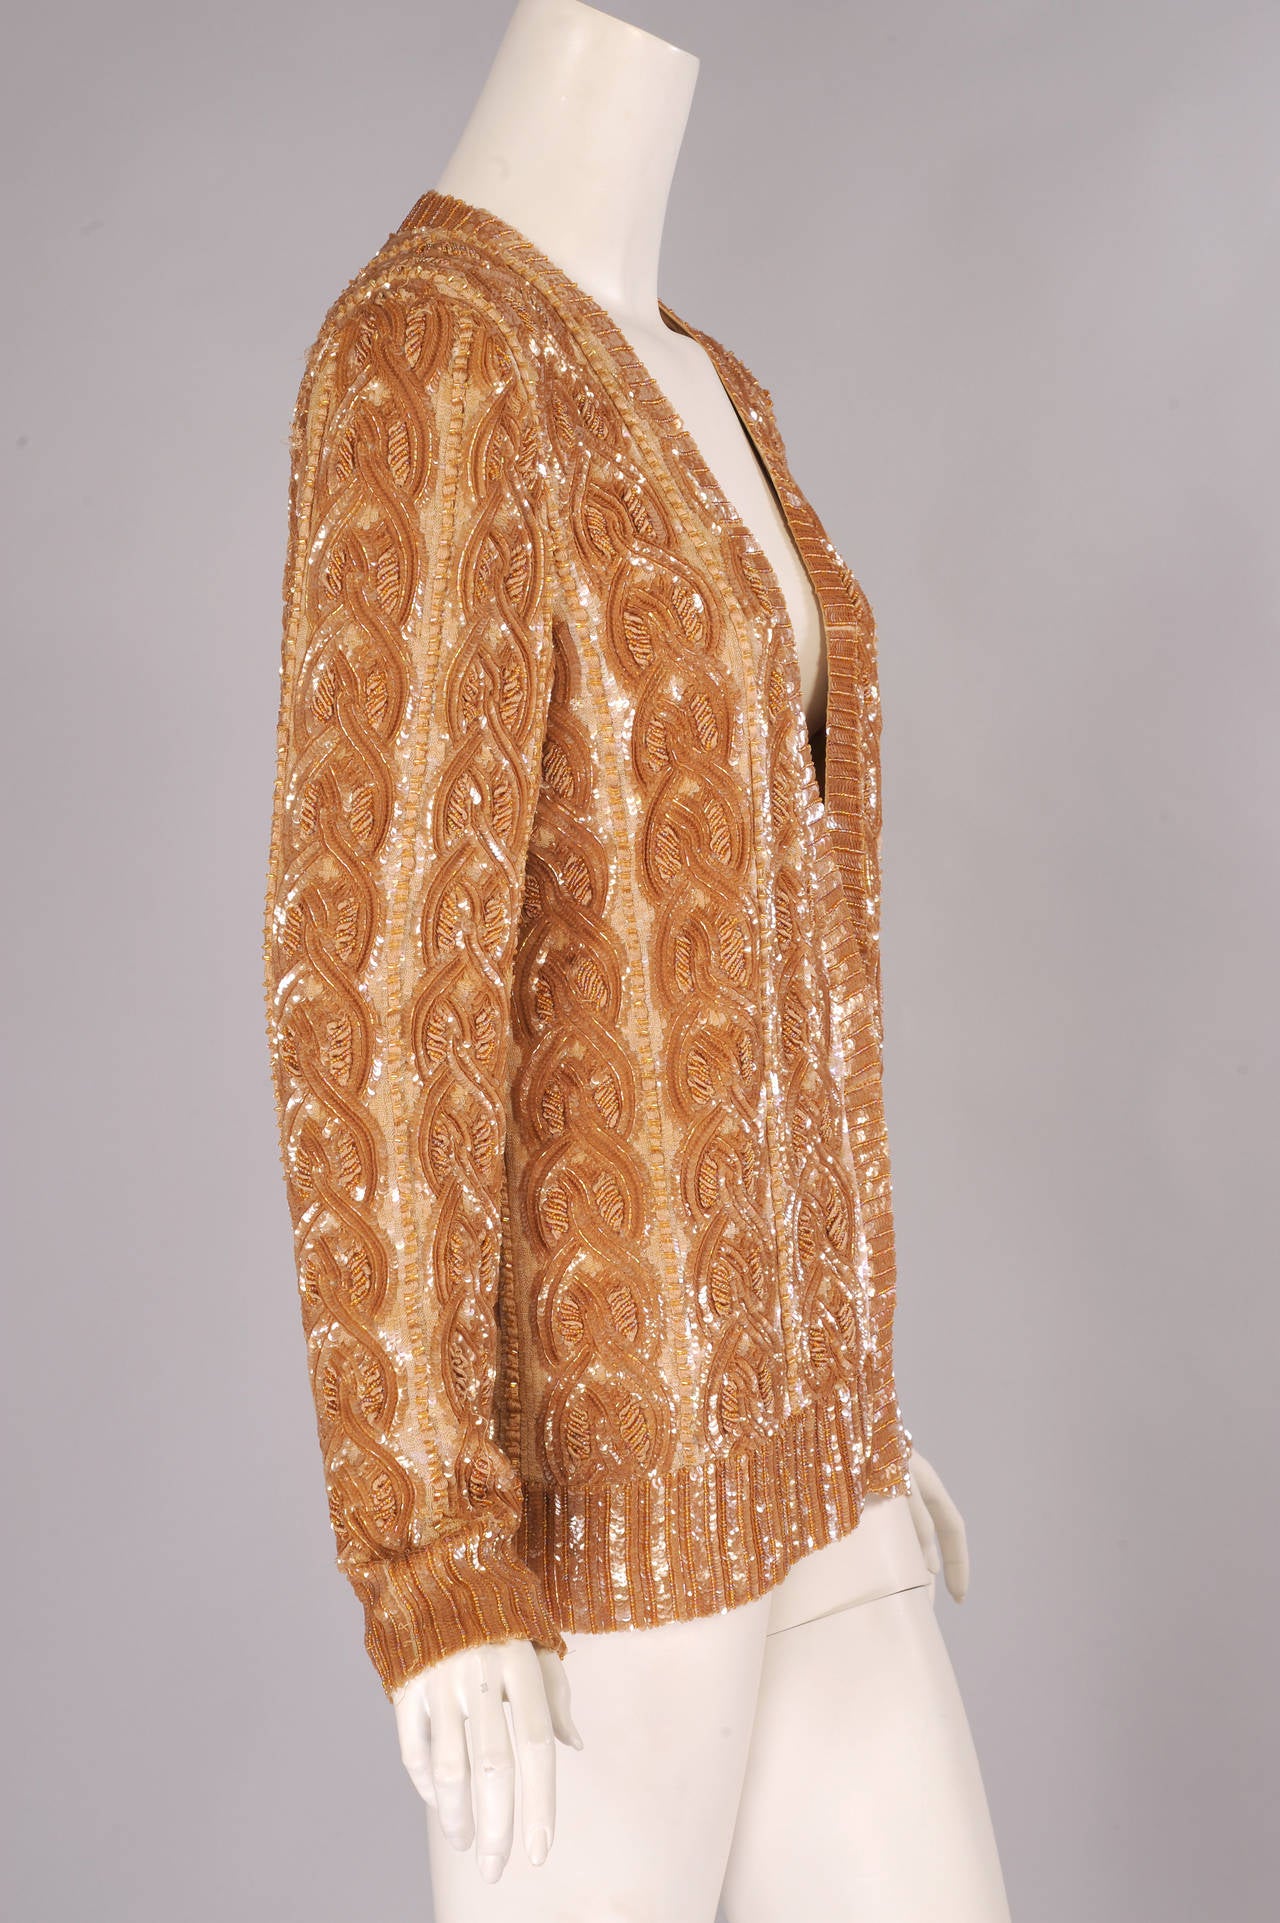 Diese elegante Jacke, die von einem klassischen Zopfstrickpullover inspiriert ist, ist ein erstaunliches Beispiel für Perlenstickerei und Handstickerei. Die Borten sind mit Pailletten und Kaviarperlen verziert. Für den Zopfstich mit Seidenstickerei